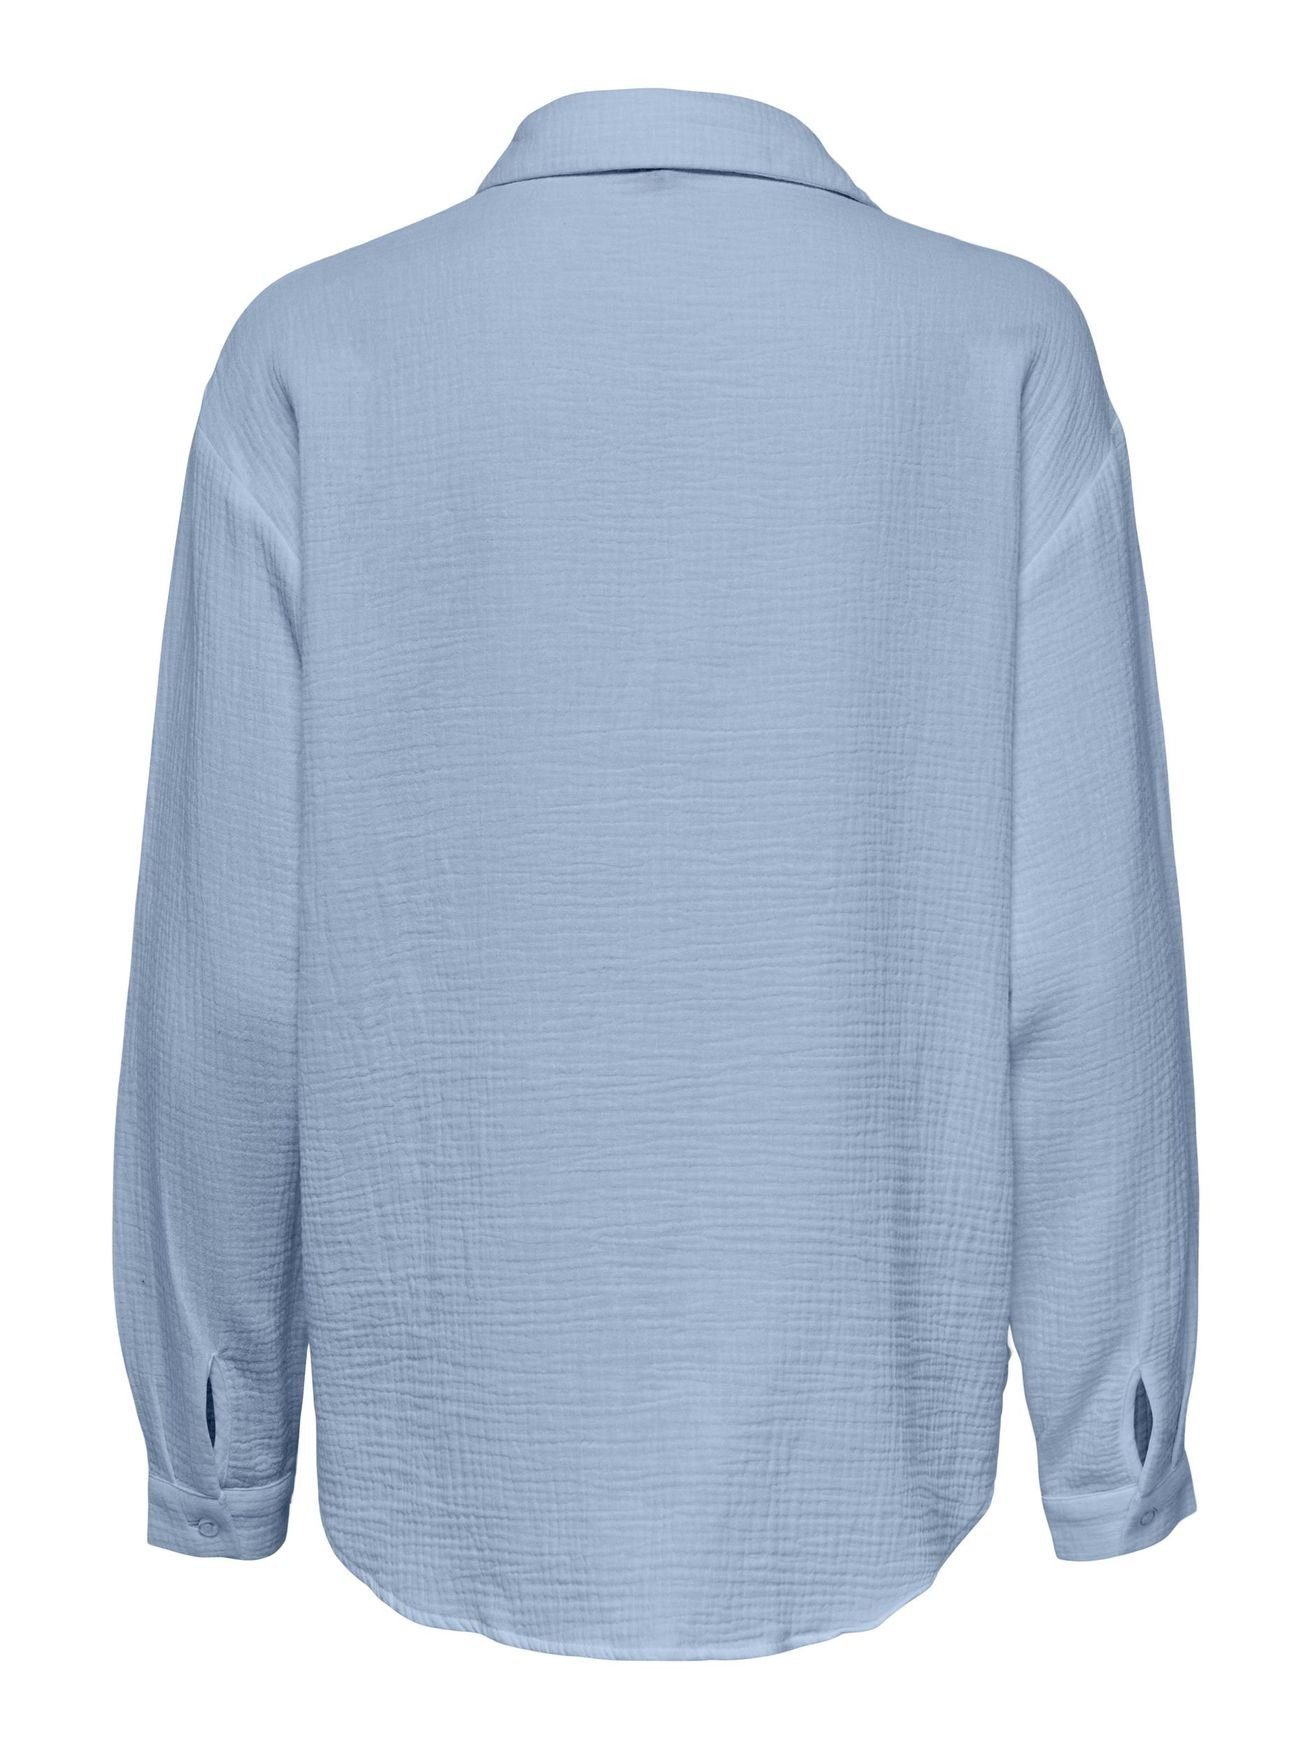 JACQUELINE Blusenshirt 4944 de Knitteroptik Hemd in in YONG Langarm Elegantes JDYTHEIS Blau Bluse